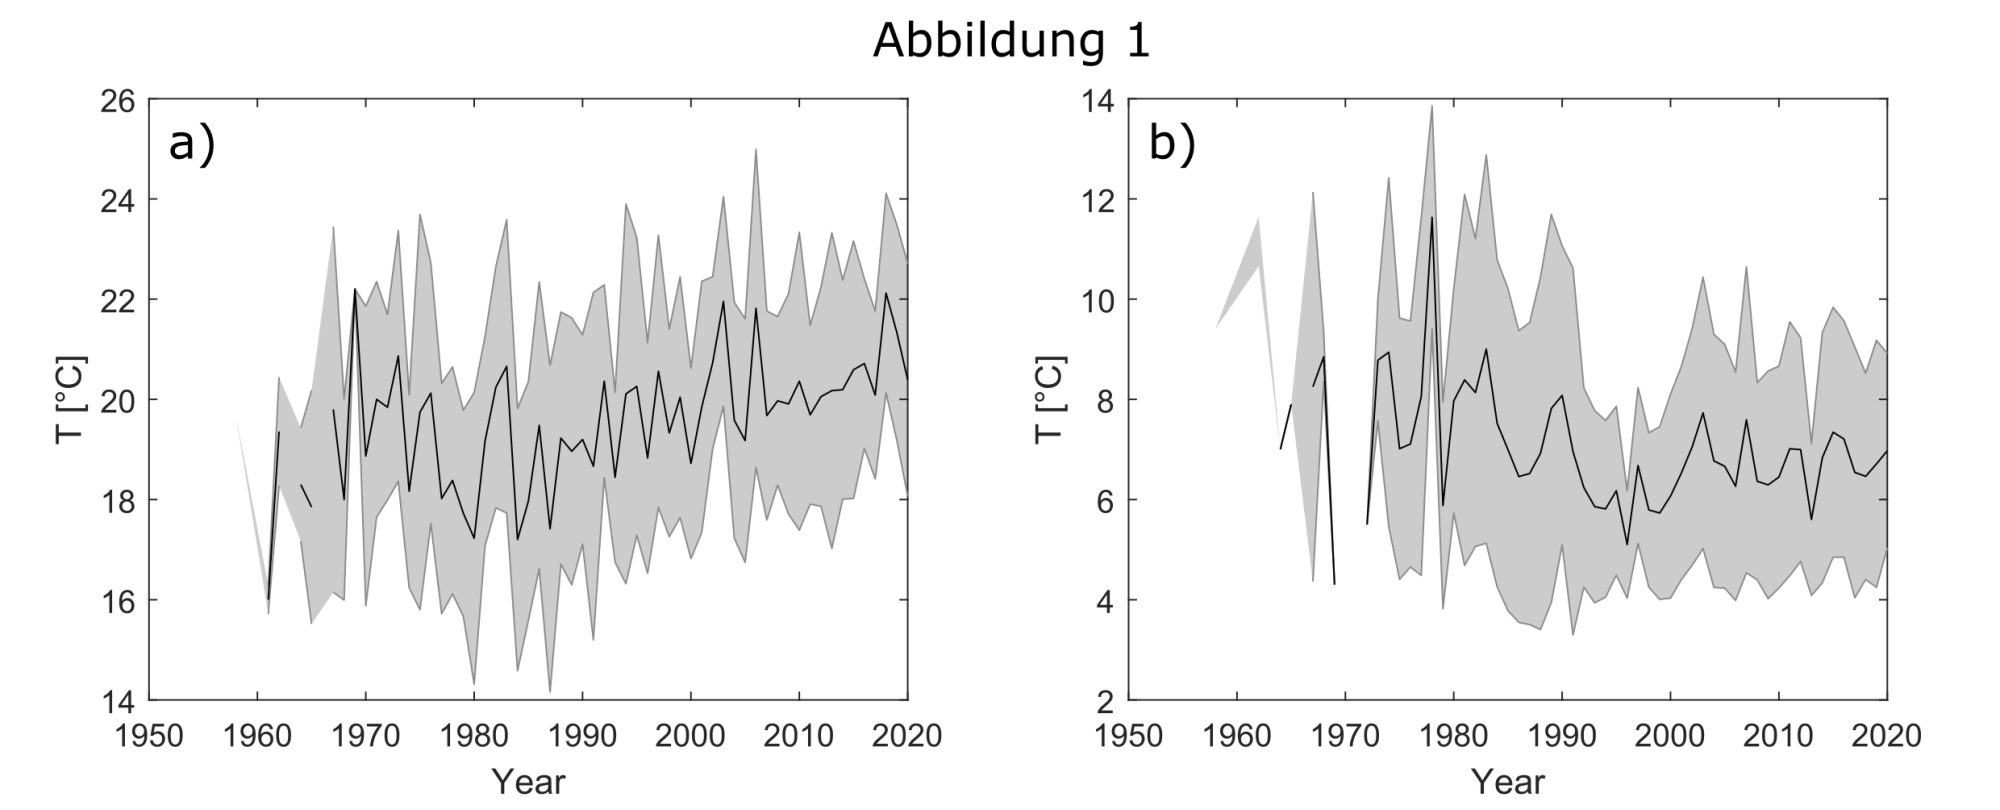 Links Plot von 45 Oberflächentemperaturen gegen die Zeit (1950-2020), die Kurve zeigt tendentiell einen ansteigenden Verlauf. Rechts derselbe Plot für die Tiefenwassertemperaturen. Hier ist kein Trend erkennbar.